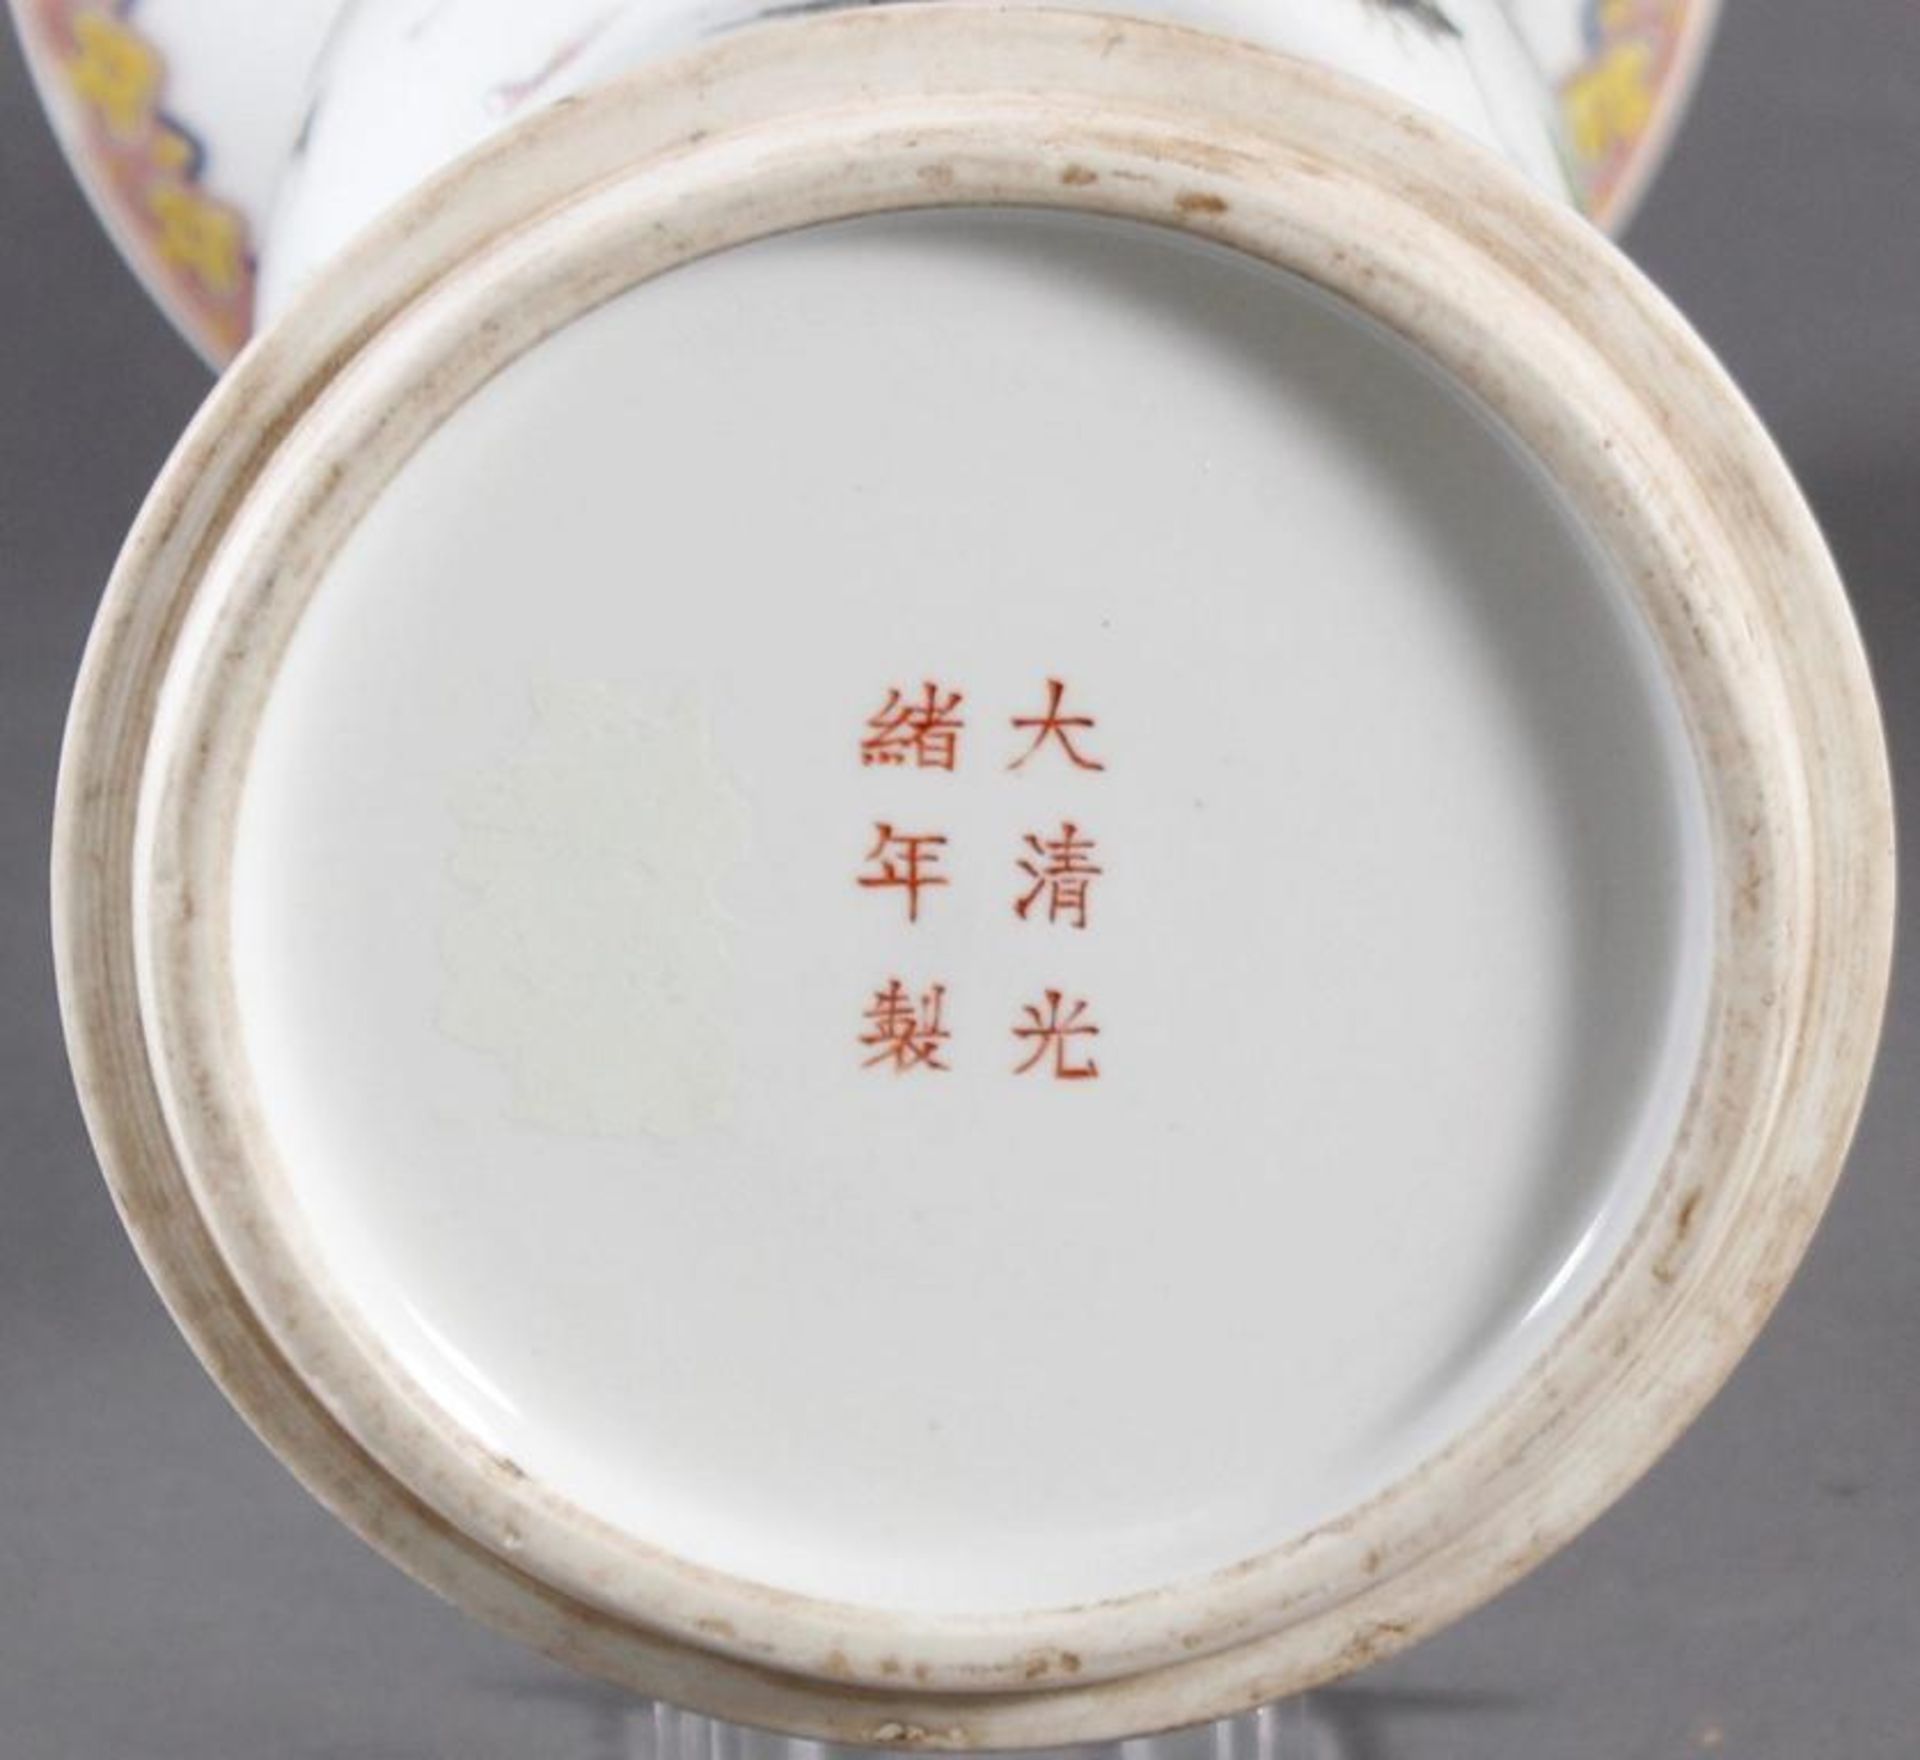 Porzellanvase, China - Image 3 of 3